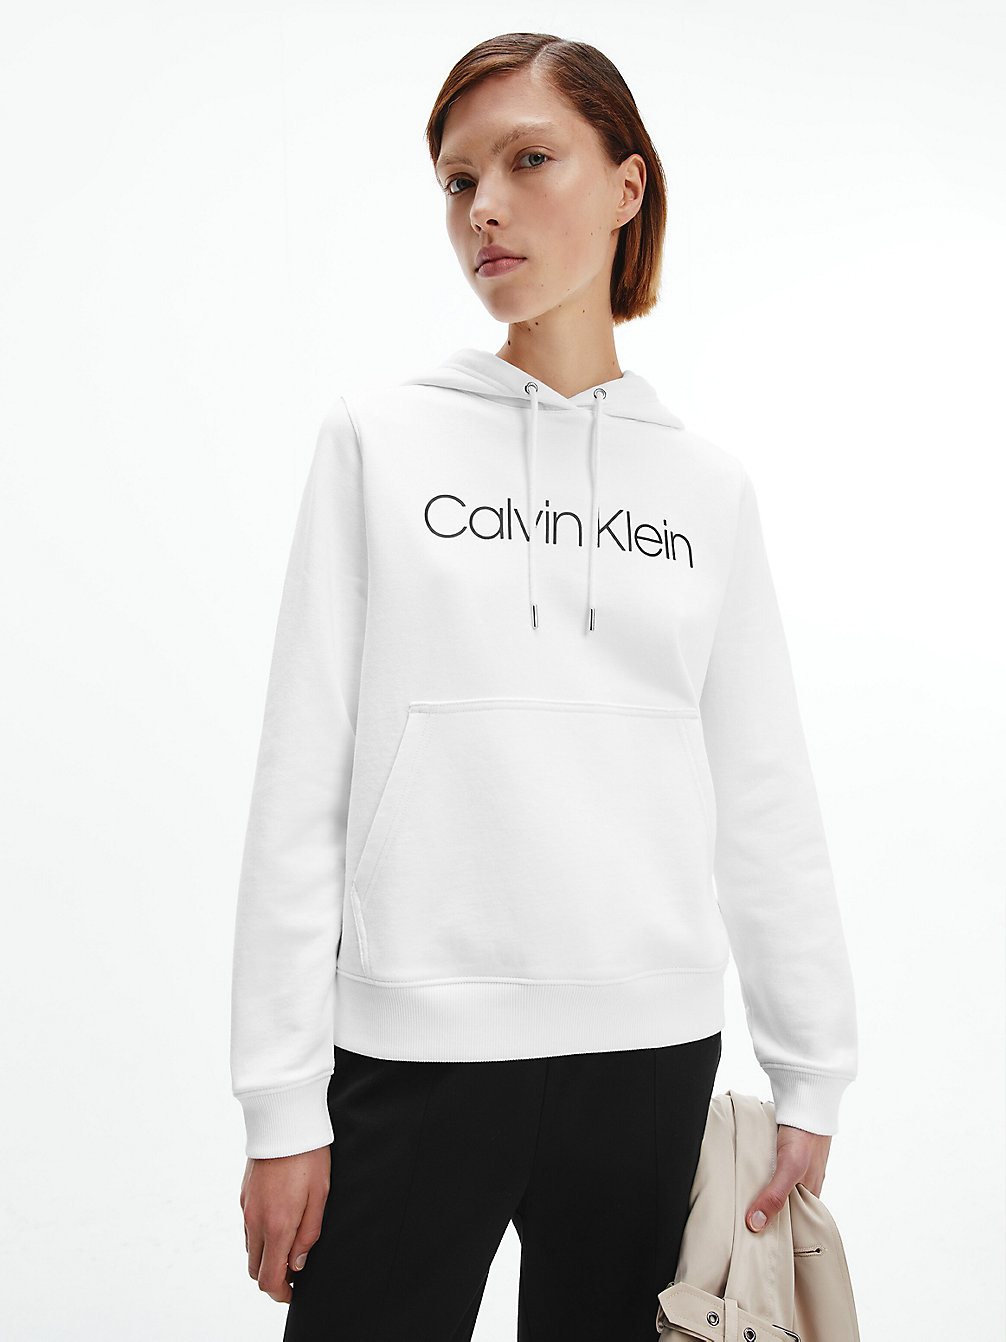 Sudadera De Algodón Con Capucha Y Logo > BRIGHT WHITE > undefined mujer > Calvin Klein